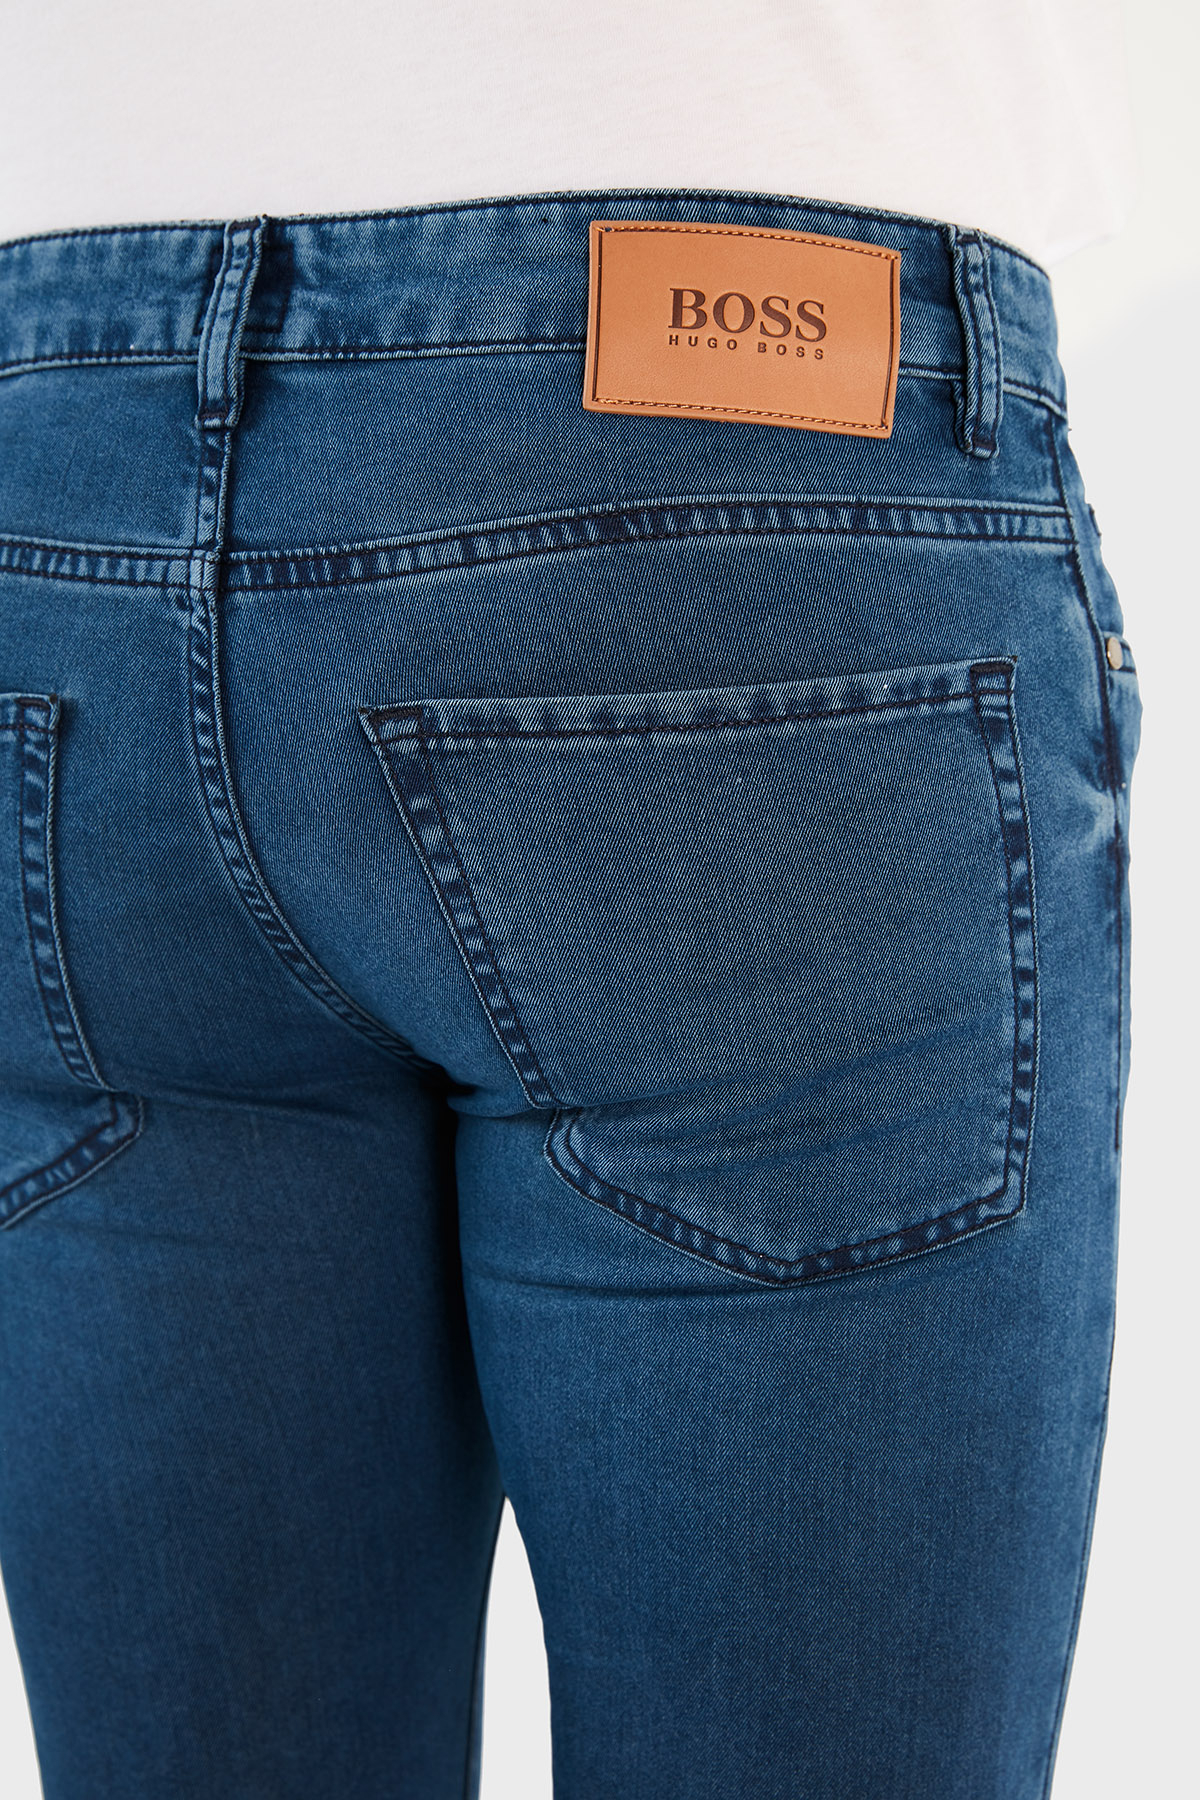 Hugo Boss Pamuklu Slim Fit Jeans Erkek Kot Pantolon 50458264 435 KOYU MAVİ